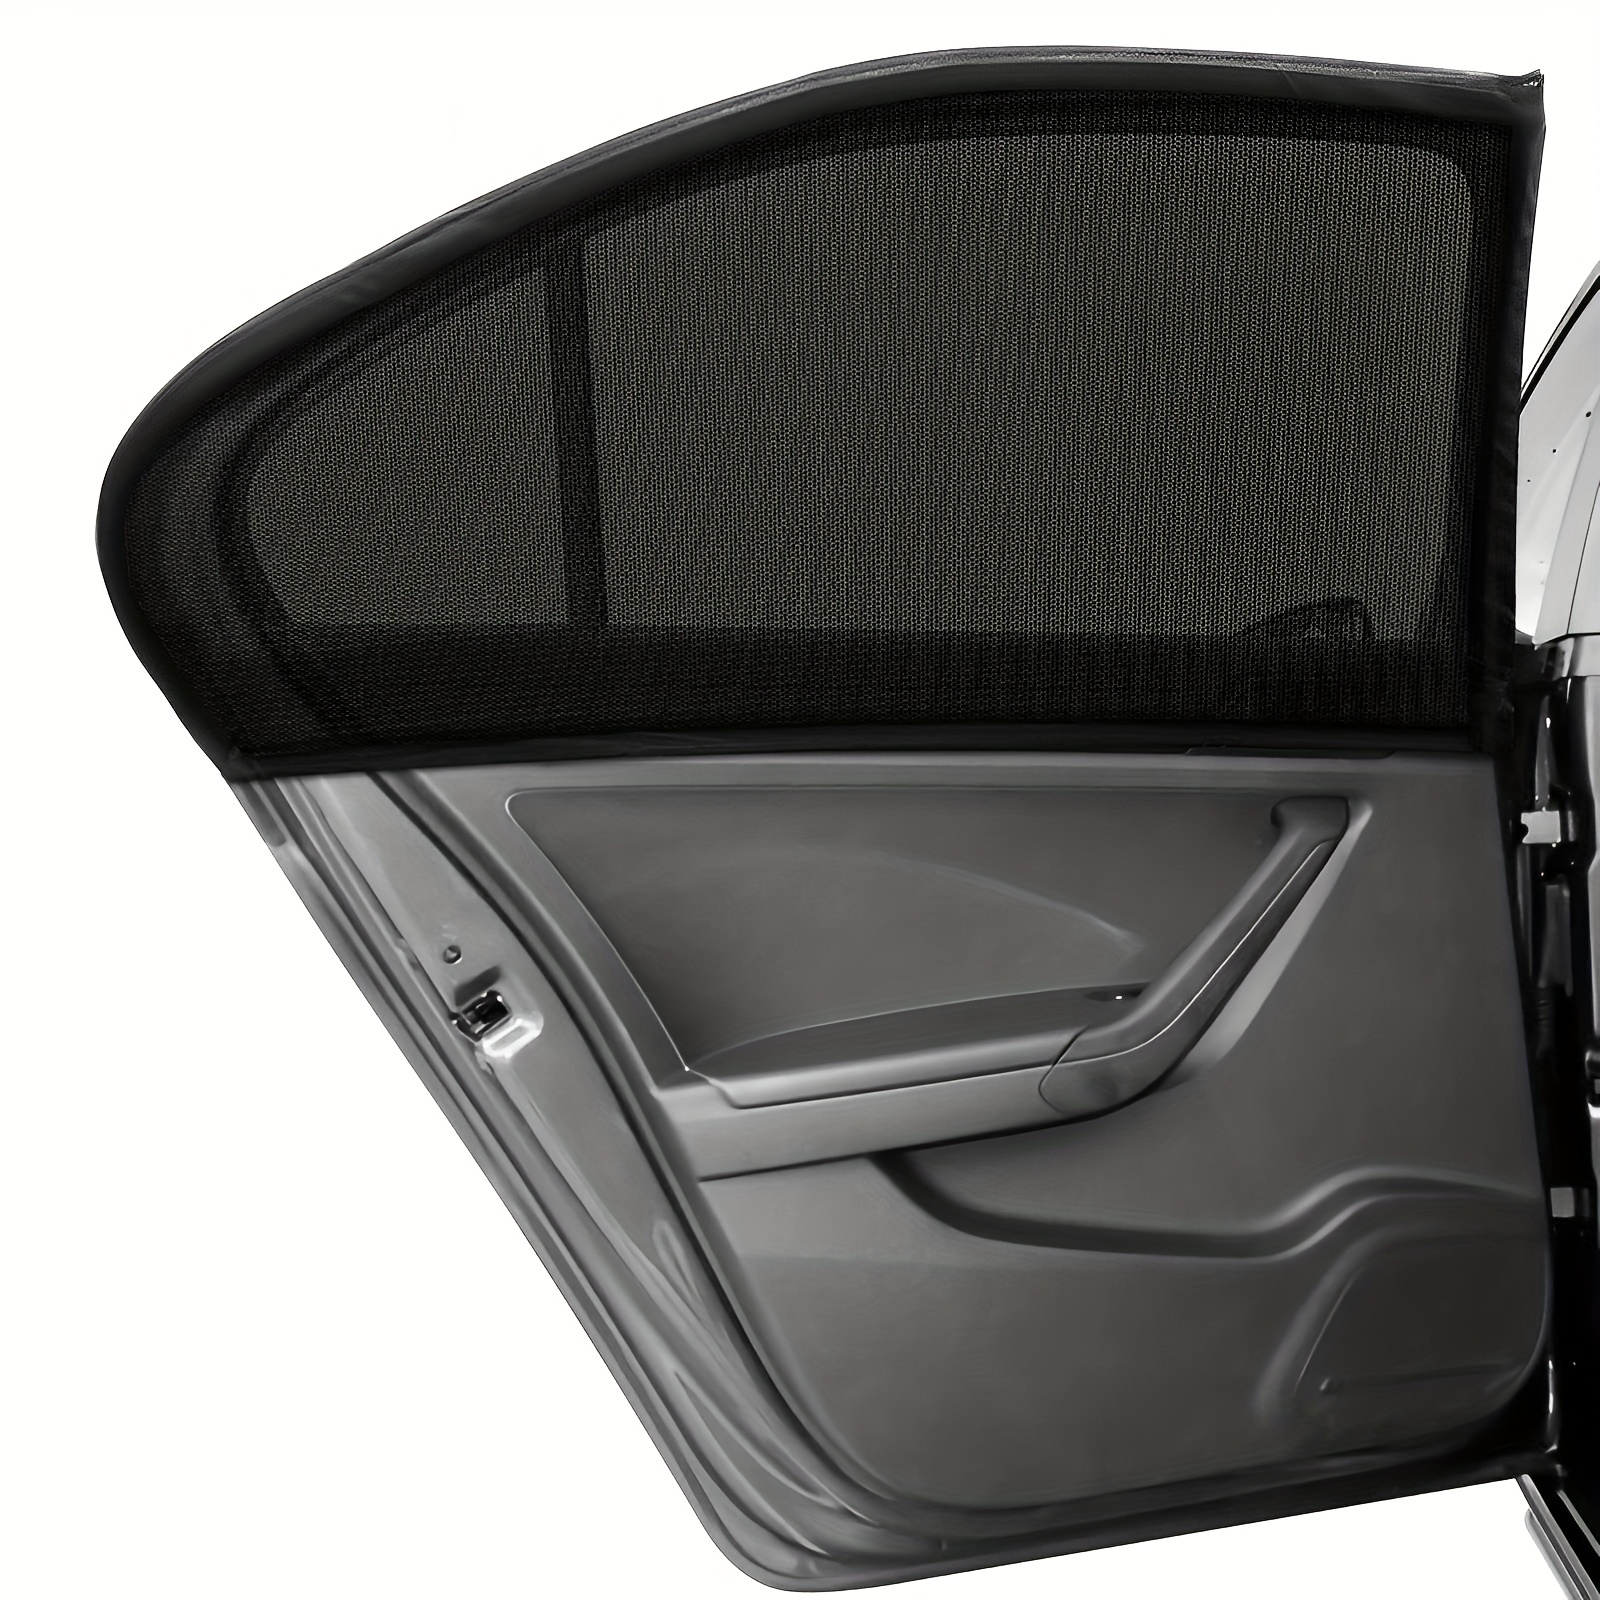 Shinybox Auto Sichtschutz Vorhänge, Auto Trennvorhänge Sonnenschutz,  Abnehmbarer Auto Trennvorhang, Heckscheibe Vorhang Trennvorhang  Sonnenblenden für